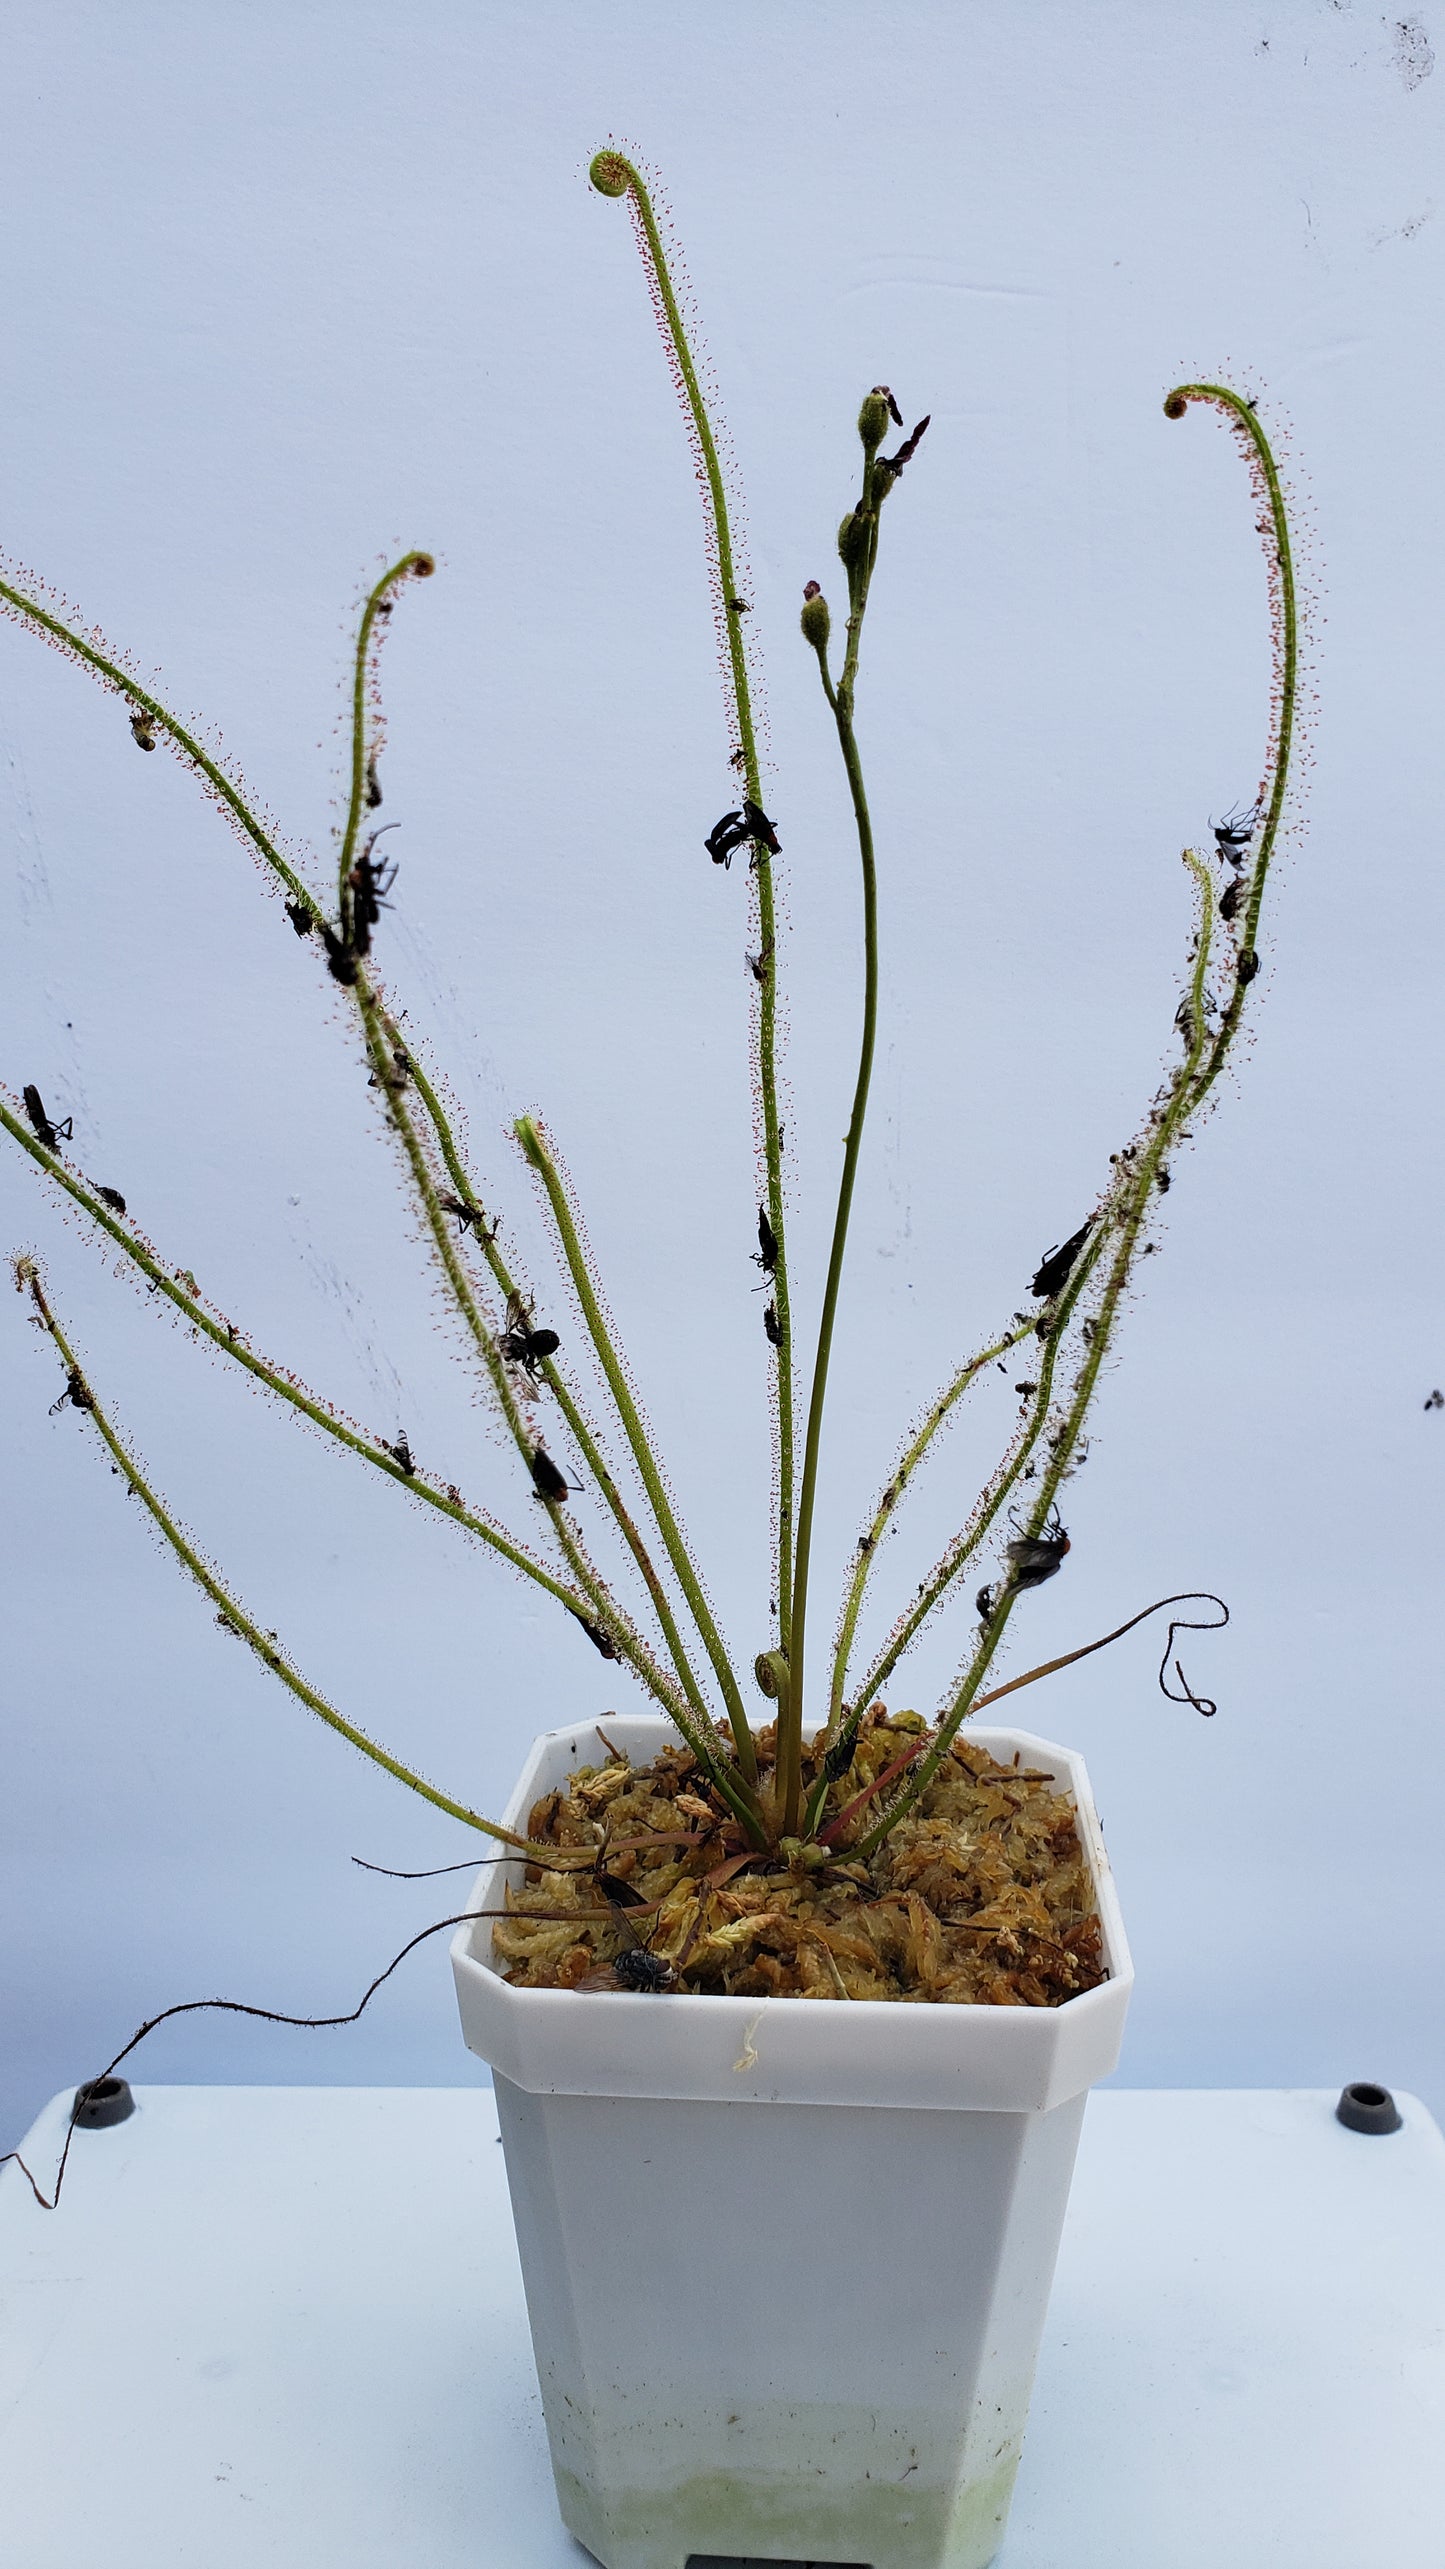 Drosera Filiformis - Thread leaved sundew